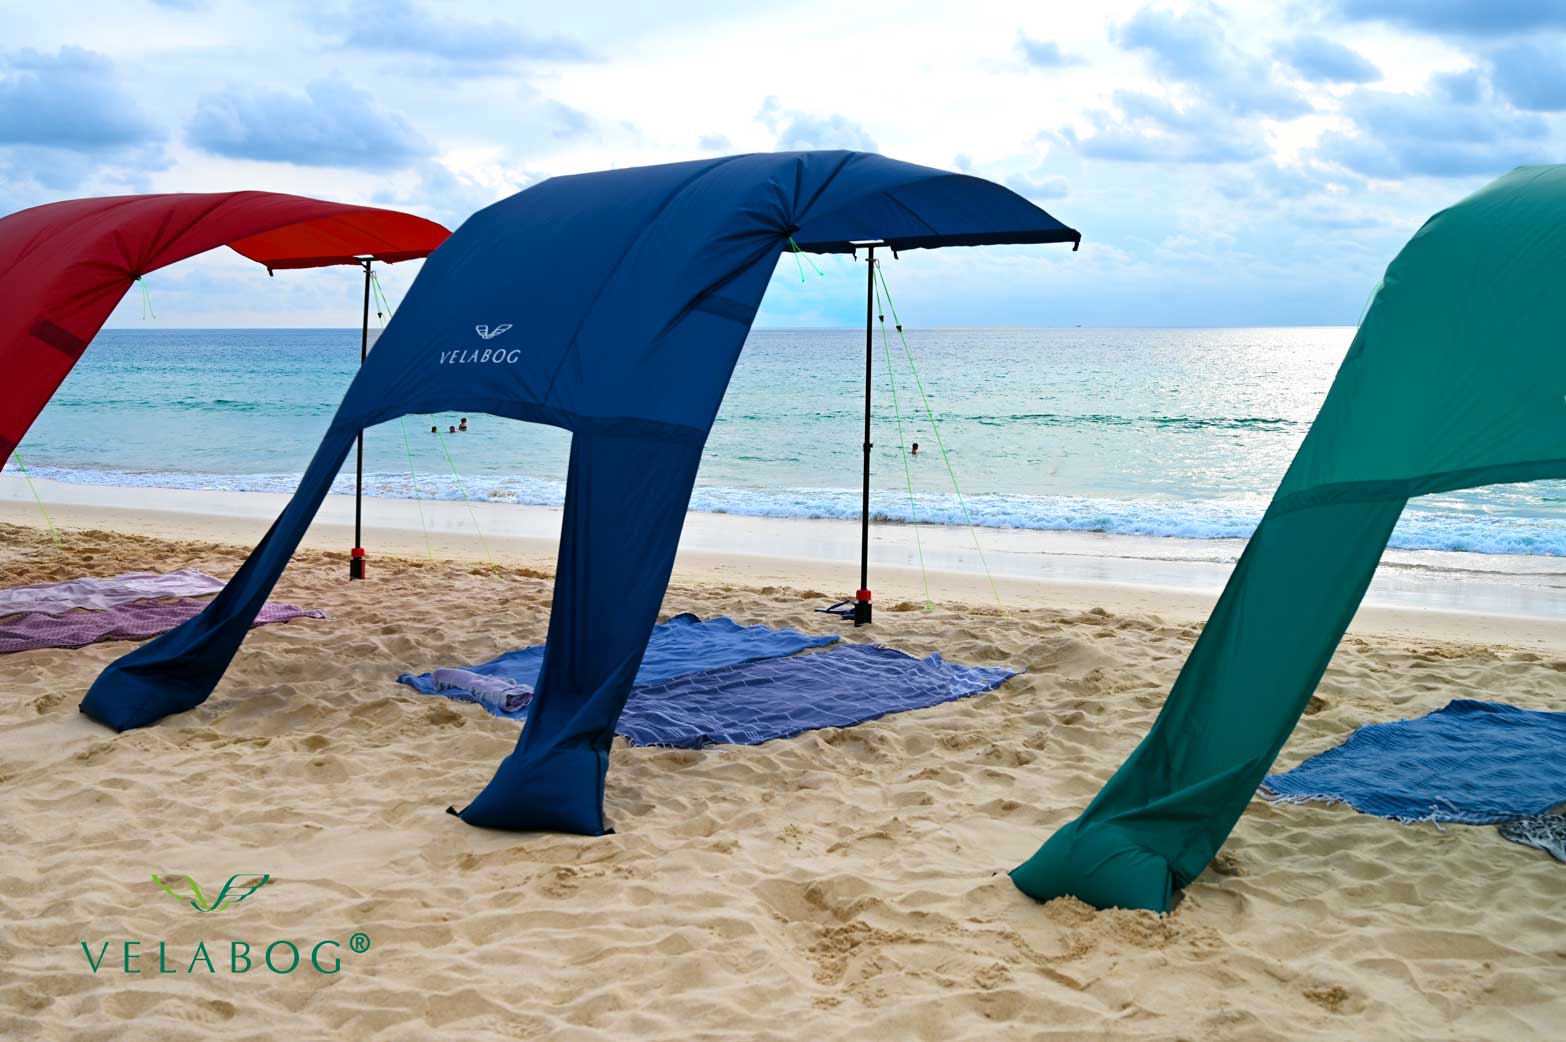 Trois voiles d’ombrage tentes plage Velabog Breeze. Le meilleur auvent de plage. Meilleure protection anti-UV sur une plage venteuse. Option de montage par vent faible à fort.